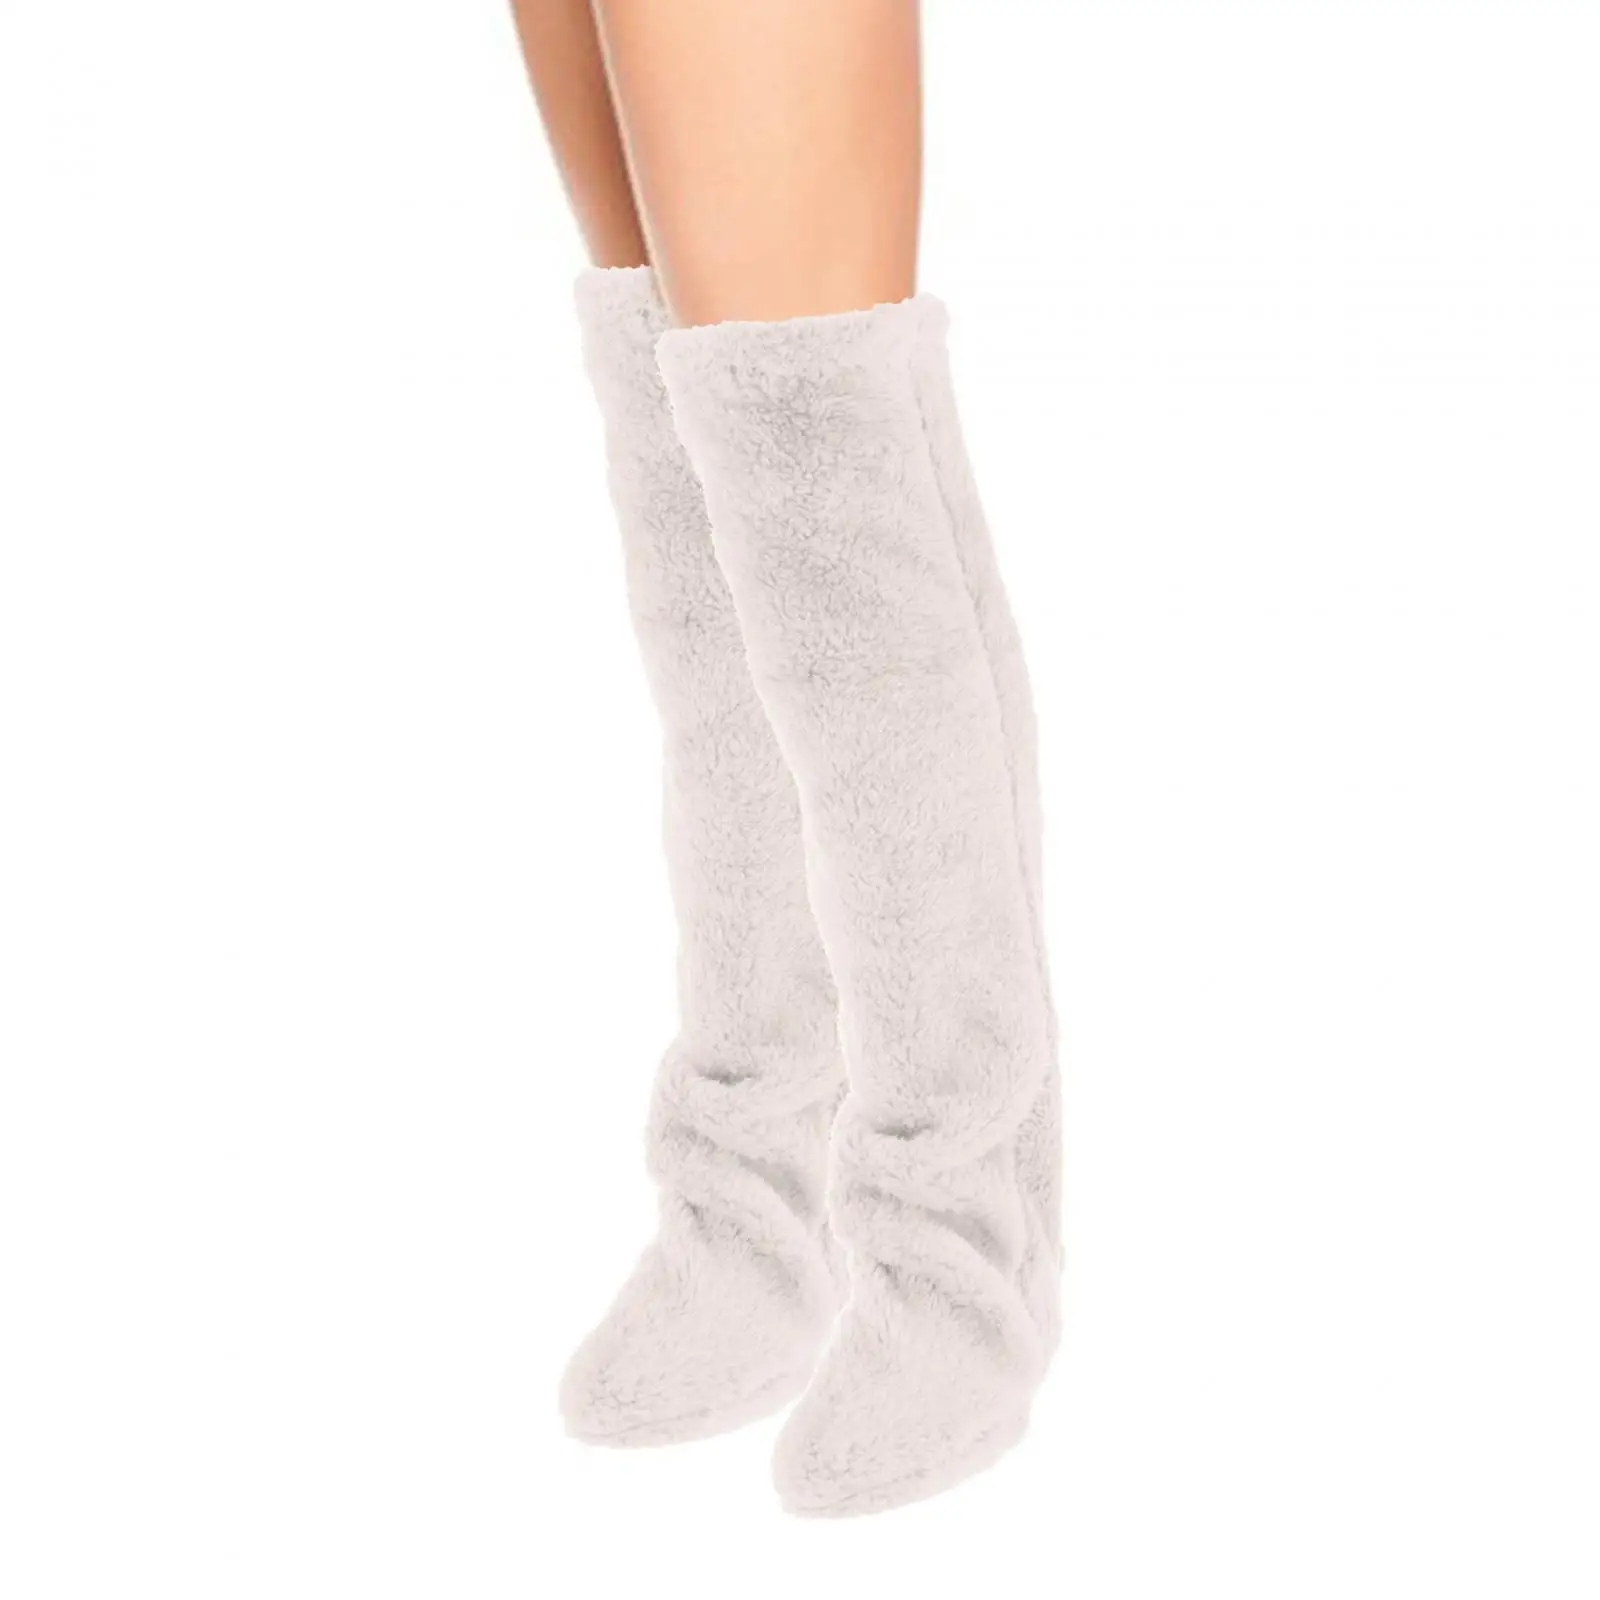 Thigh High Socks Boot Socks Stocking Long Foot Wrap Plush Leg Warmers Slipper Stockings for Office Bedroom Living Room Girl Lady